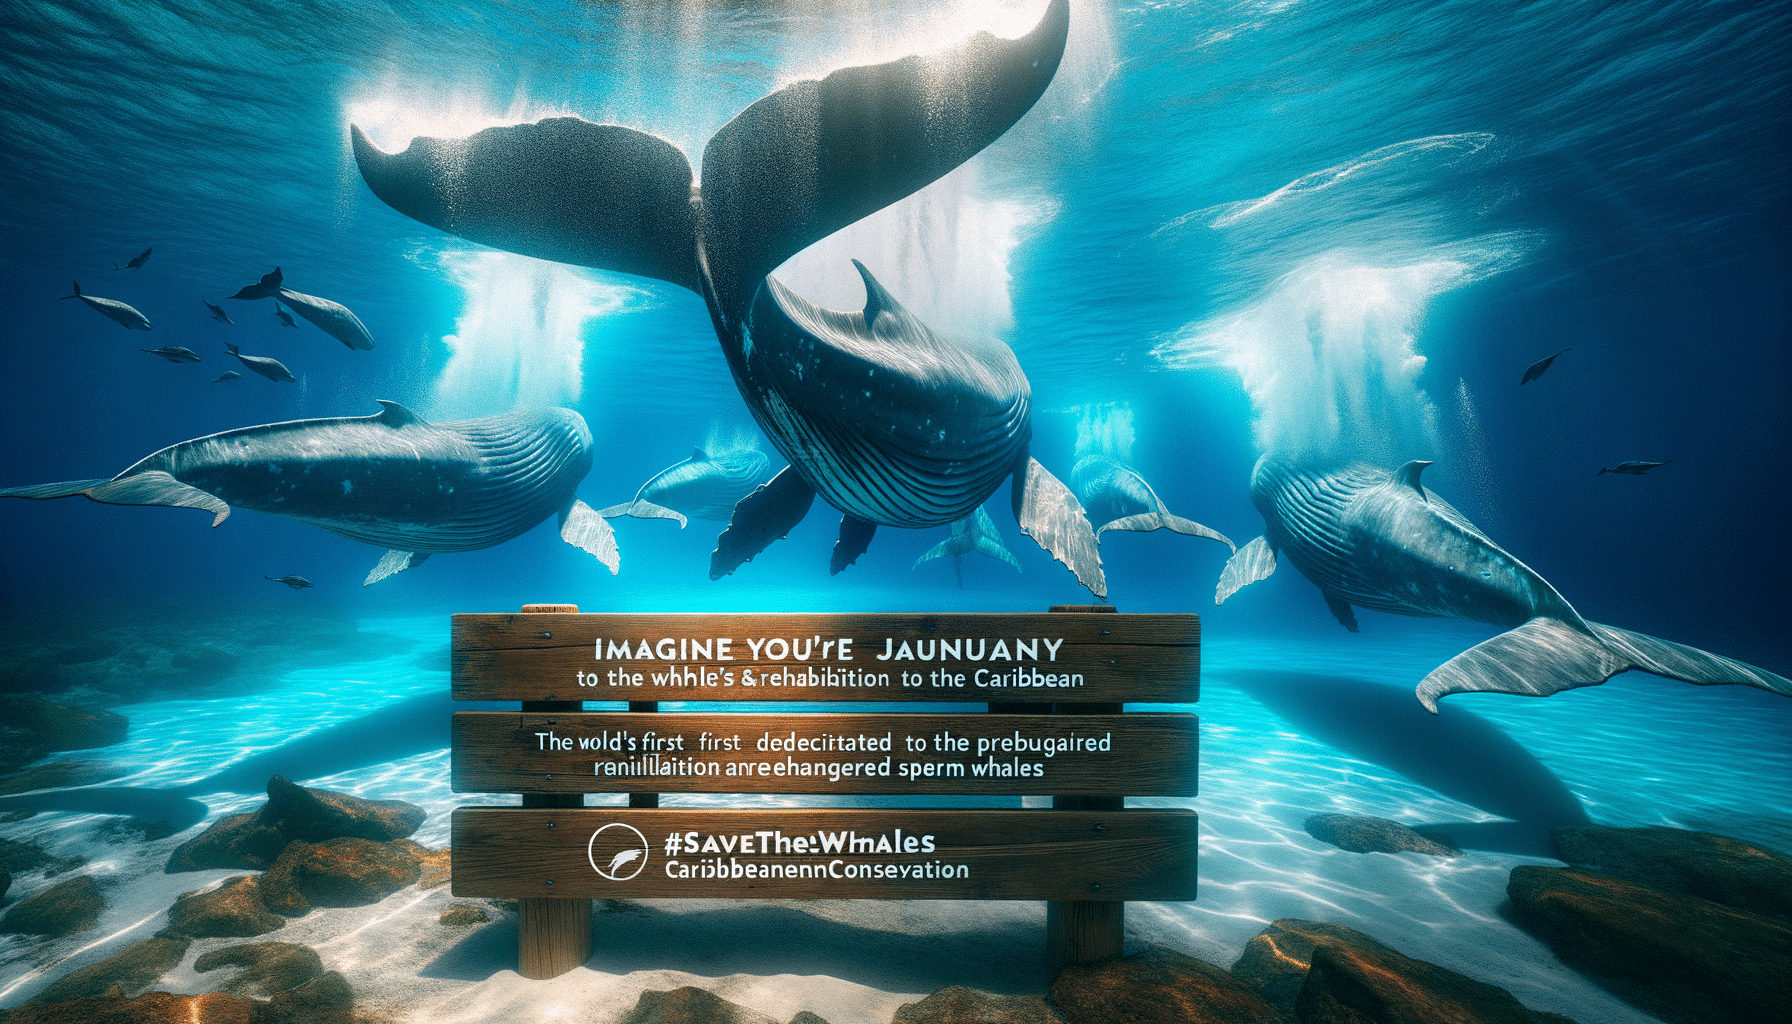 découvrez la première réserve dédiée à la sauvegarde des cachalots en danger au coeur des caraïbes, une initiative clé pour la protection de ces géants des mers.